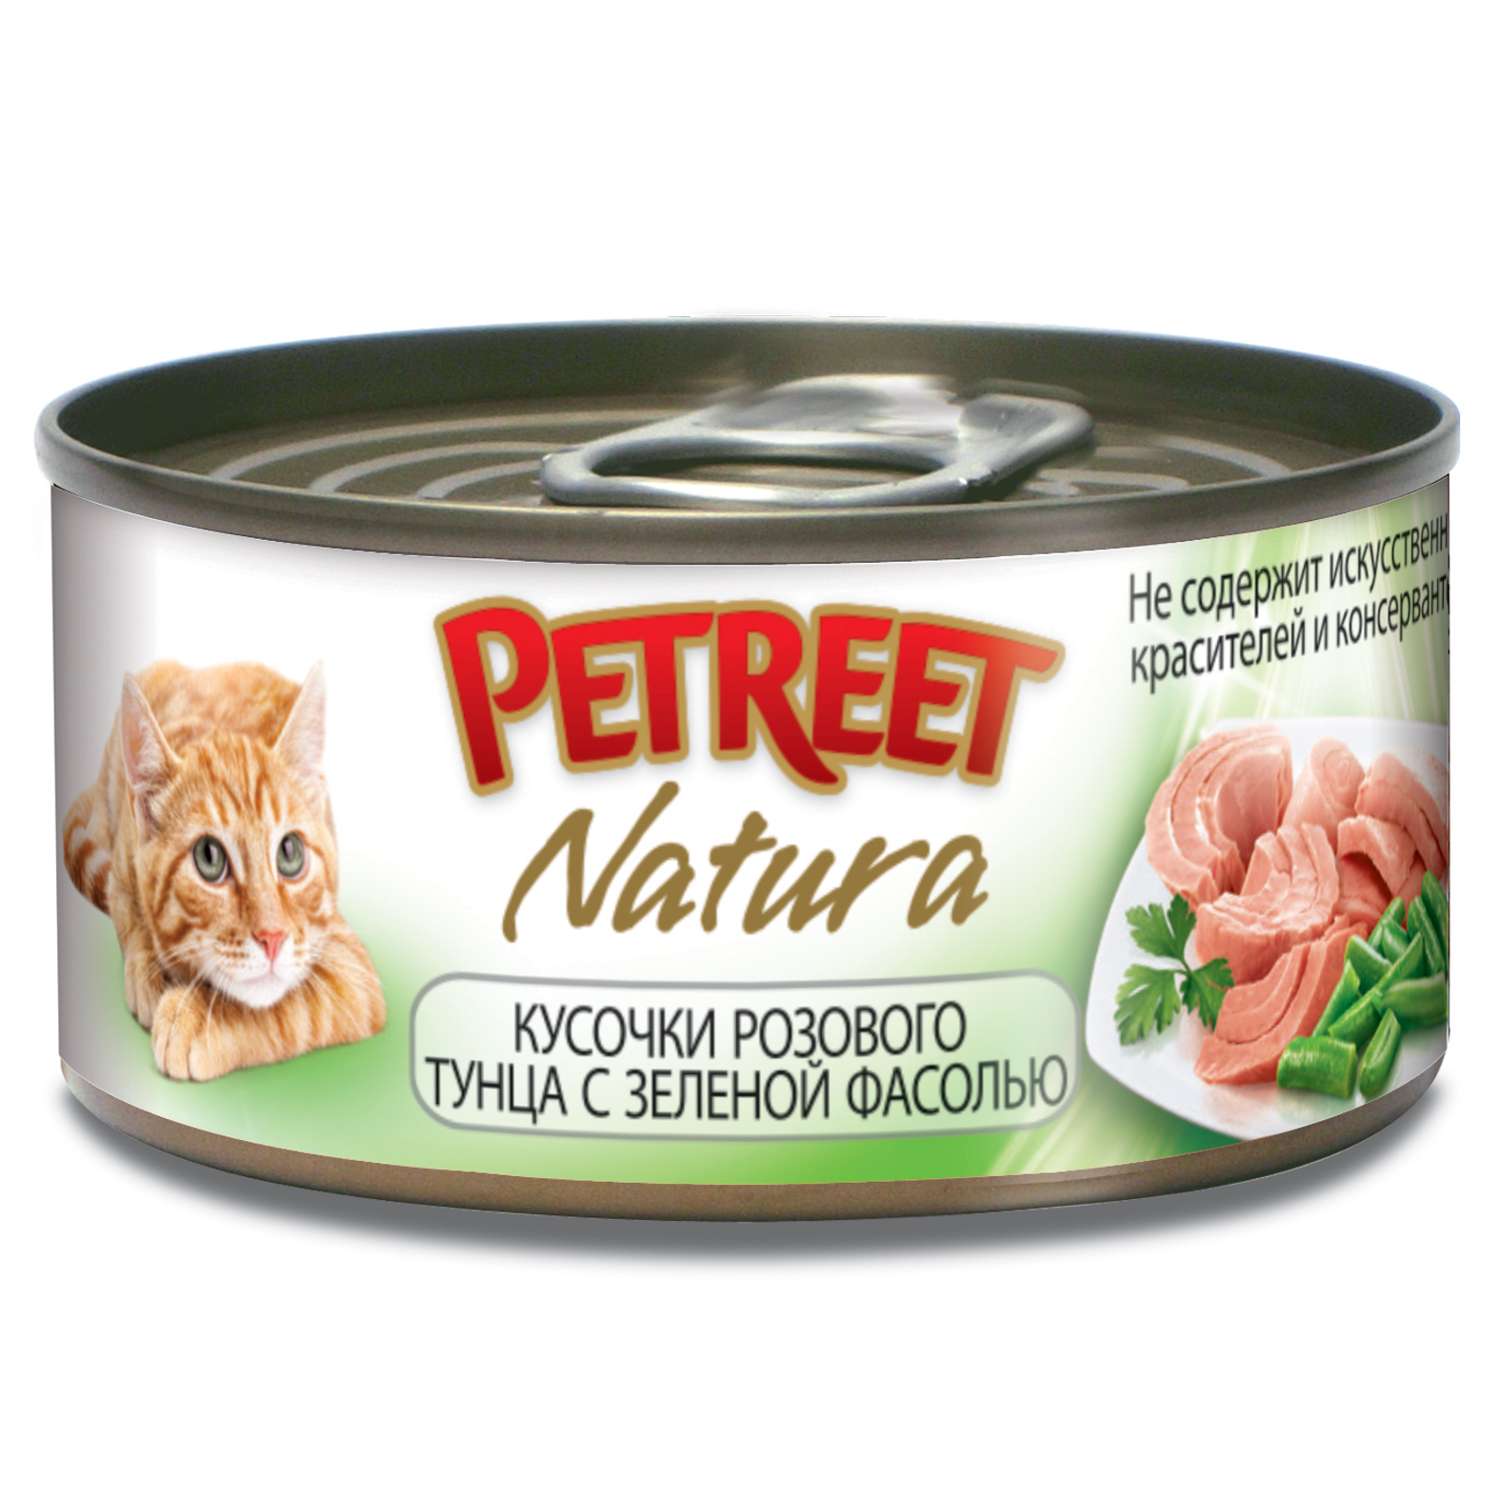 Корм влажный для кошек Petreet 70г кусочки розового тунца с зеленой фасолью консервированный - фото 1